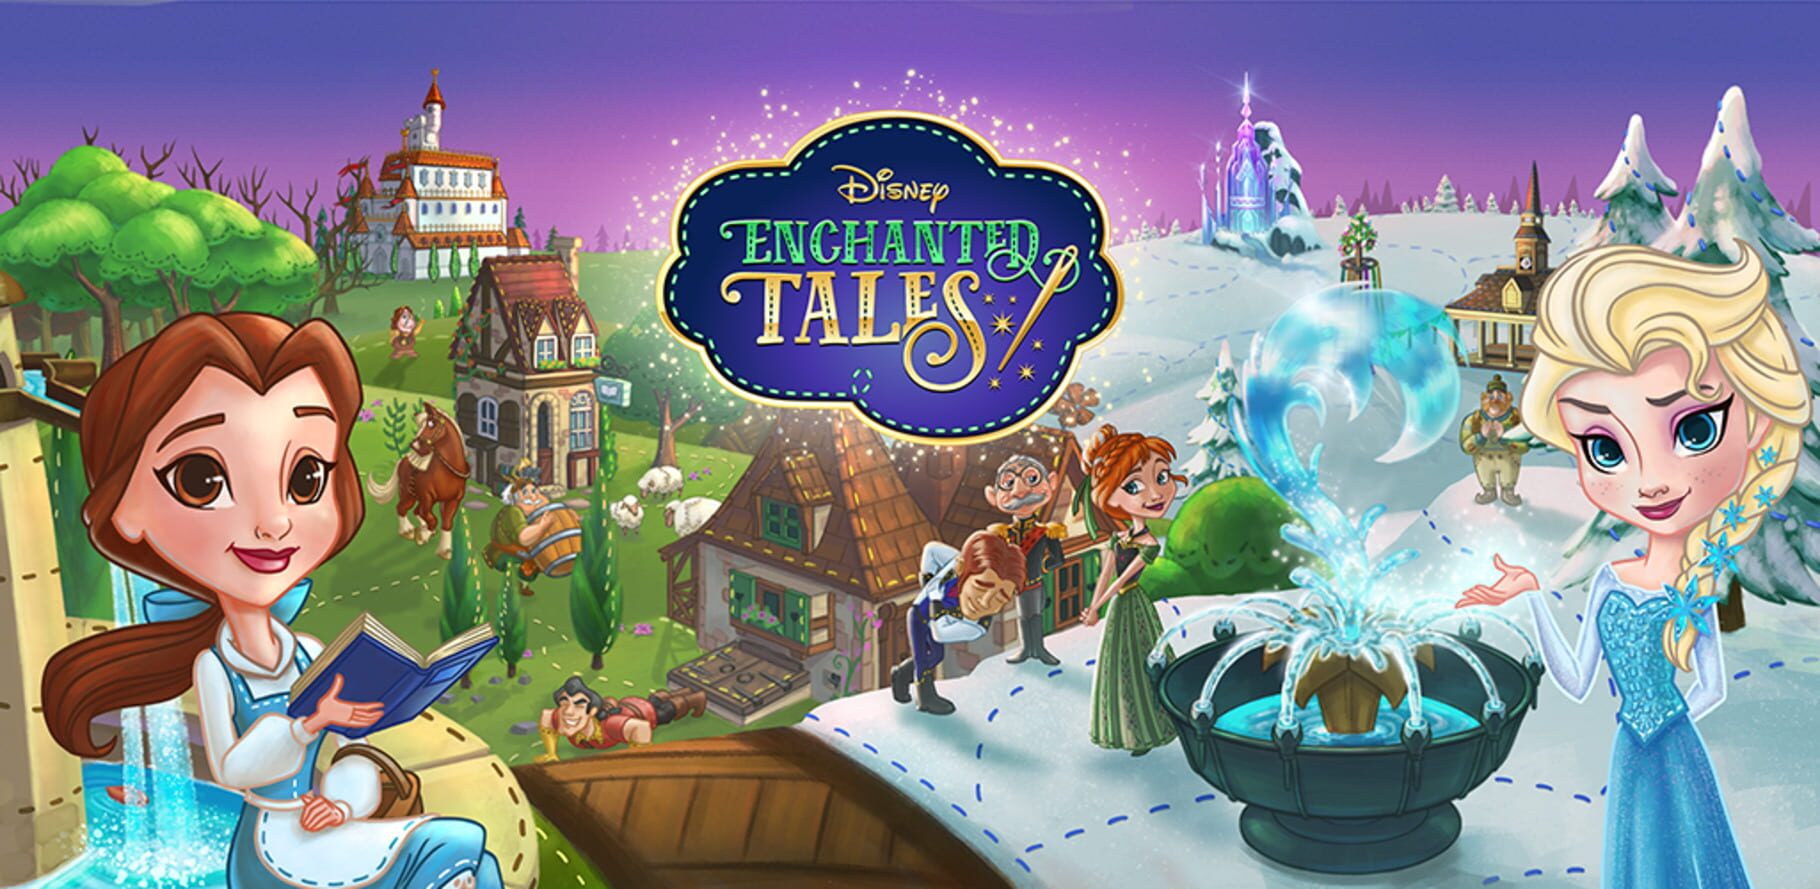 Arte - Disney Enchanted Tales